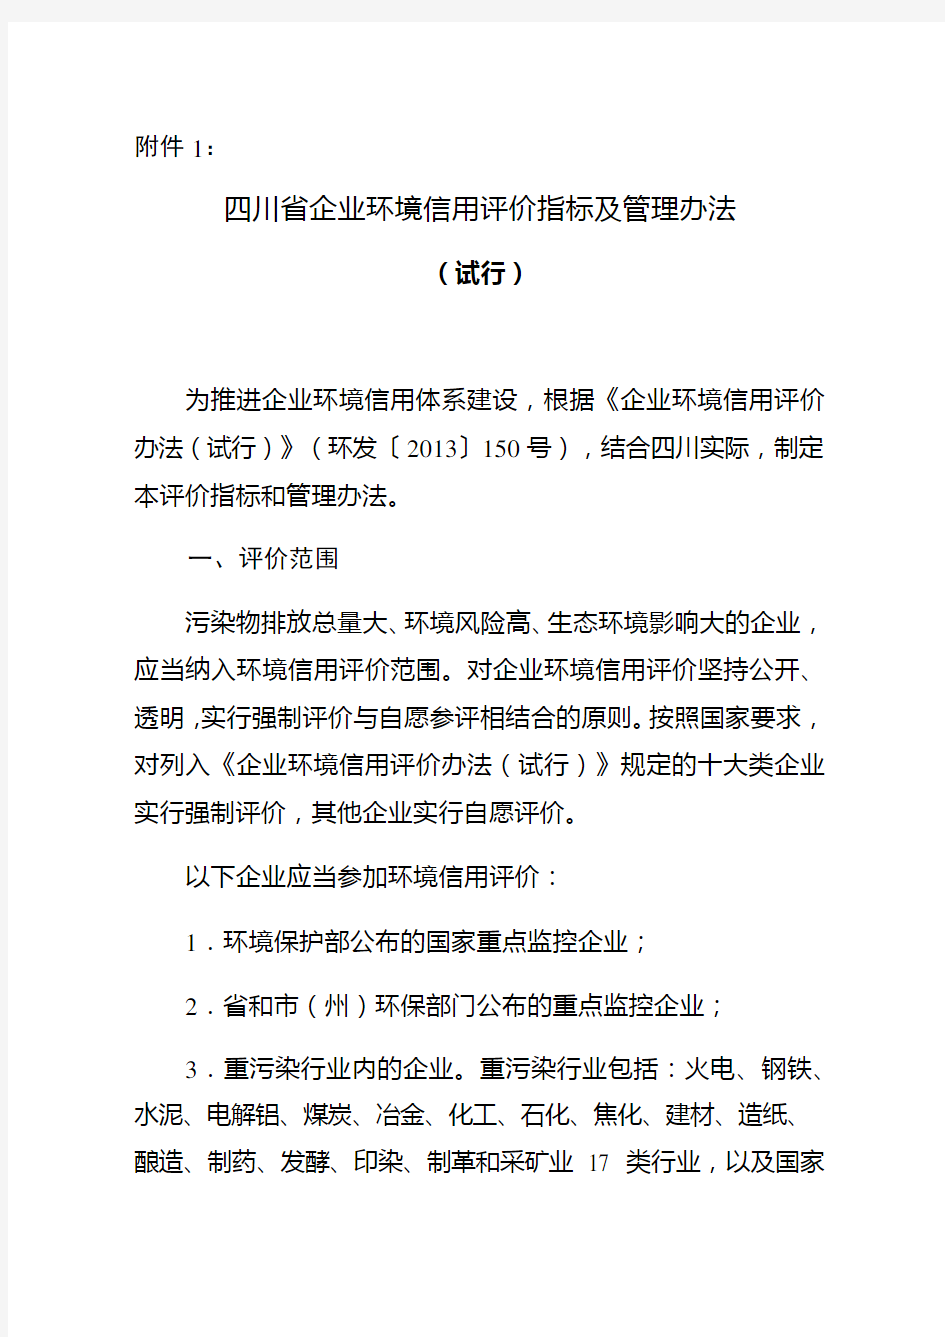 四川省企业环境信用评价指标及管理办法